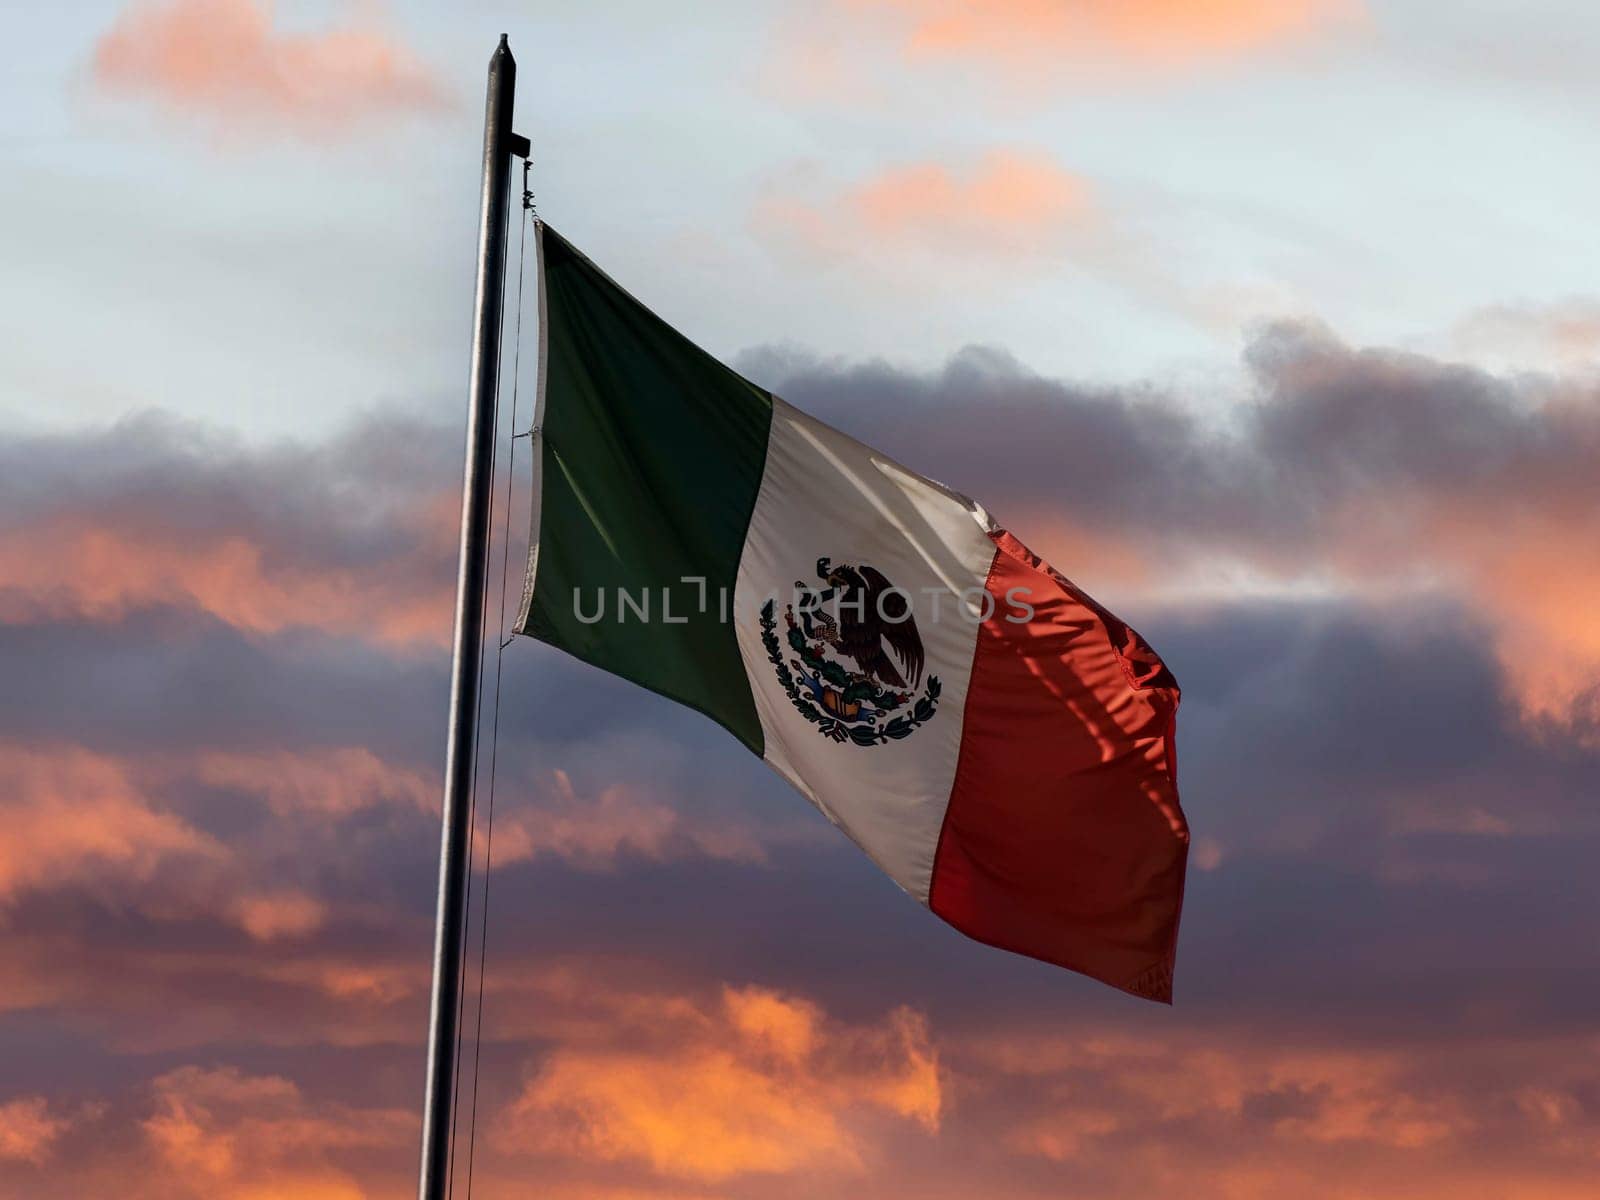 Mexican flag in ciudad de mexico, mexico city by AndreaIzzotti